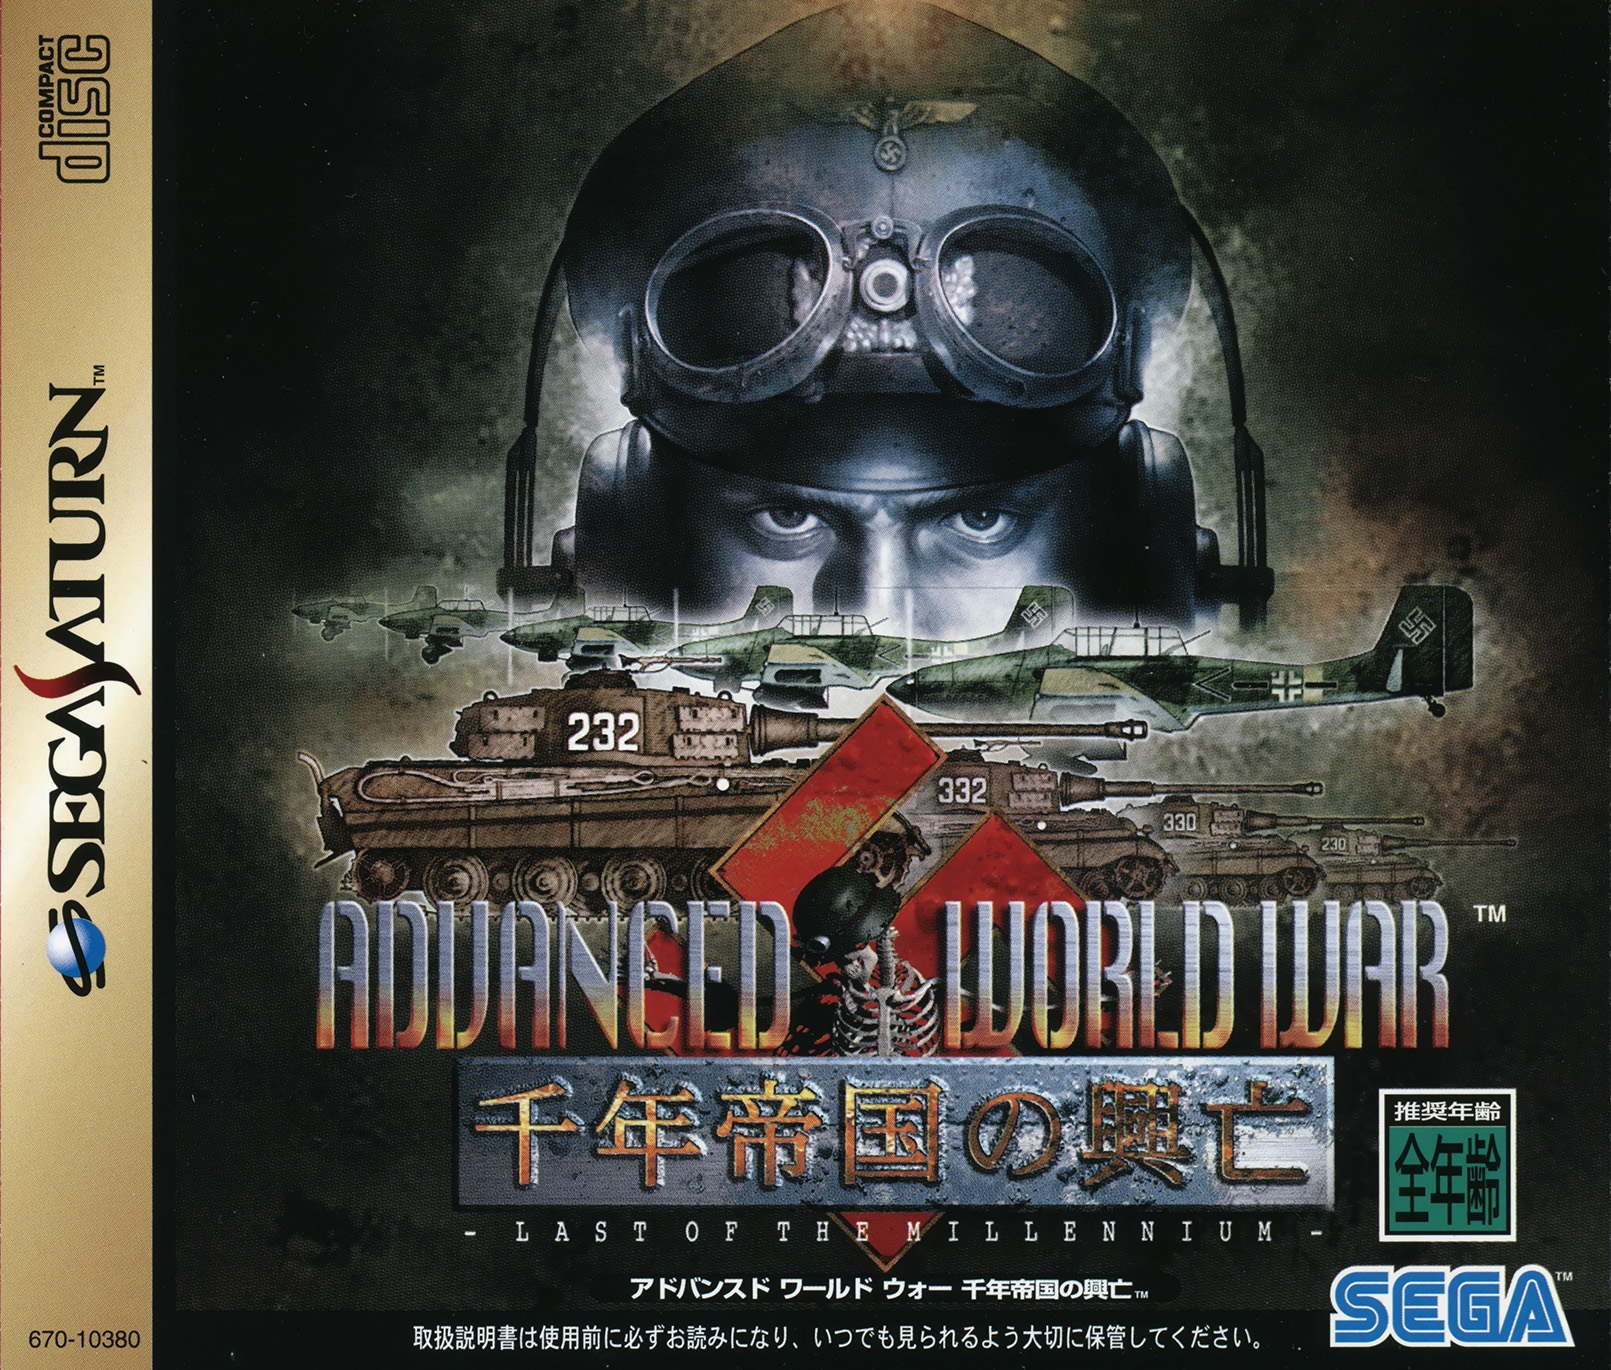 Advanced World War: Sennen Teikoku no Koubou - Last of the Millennium